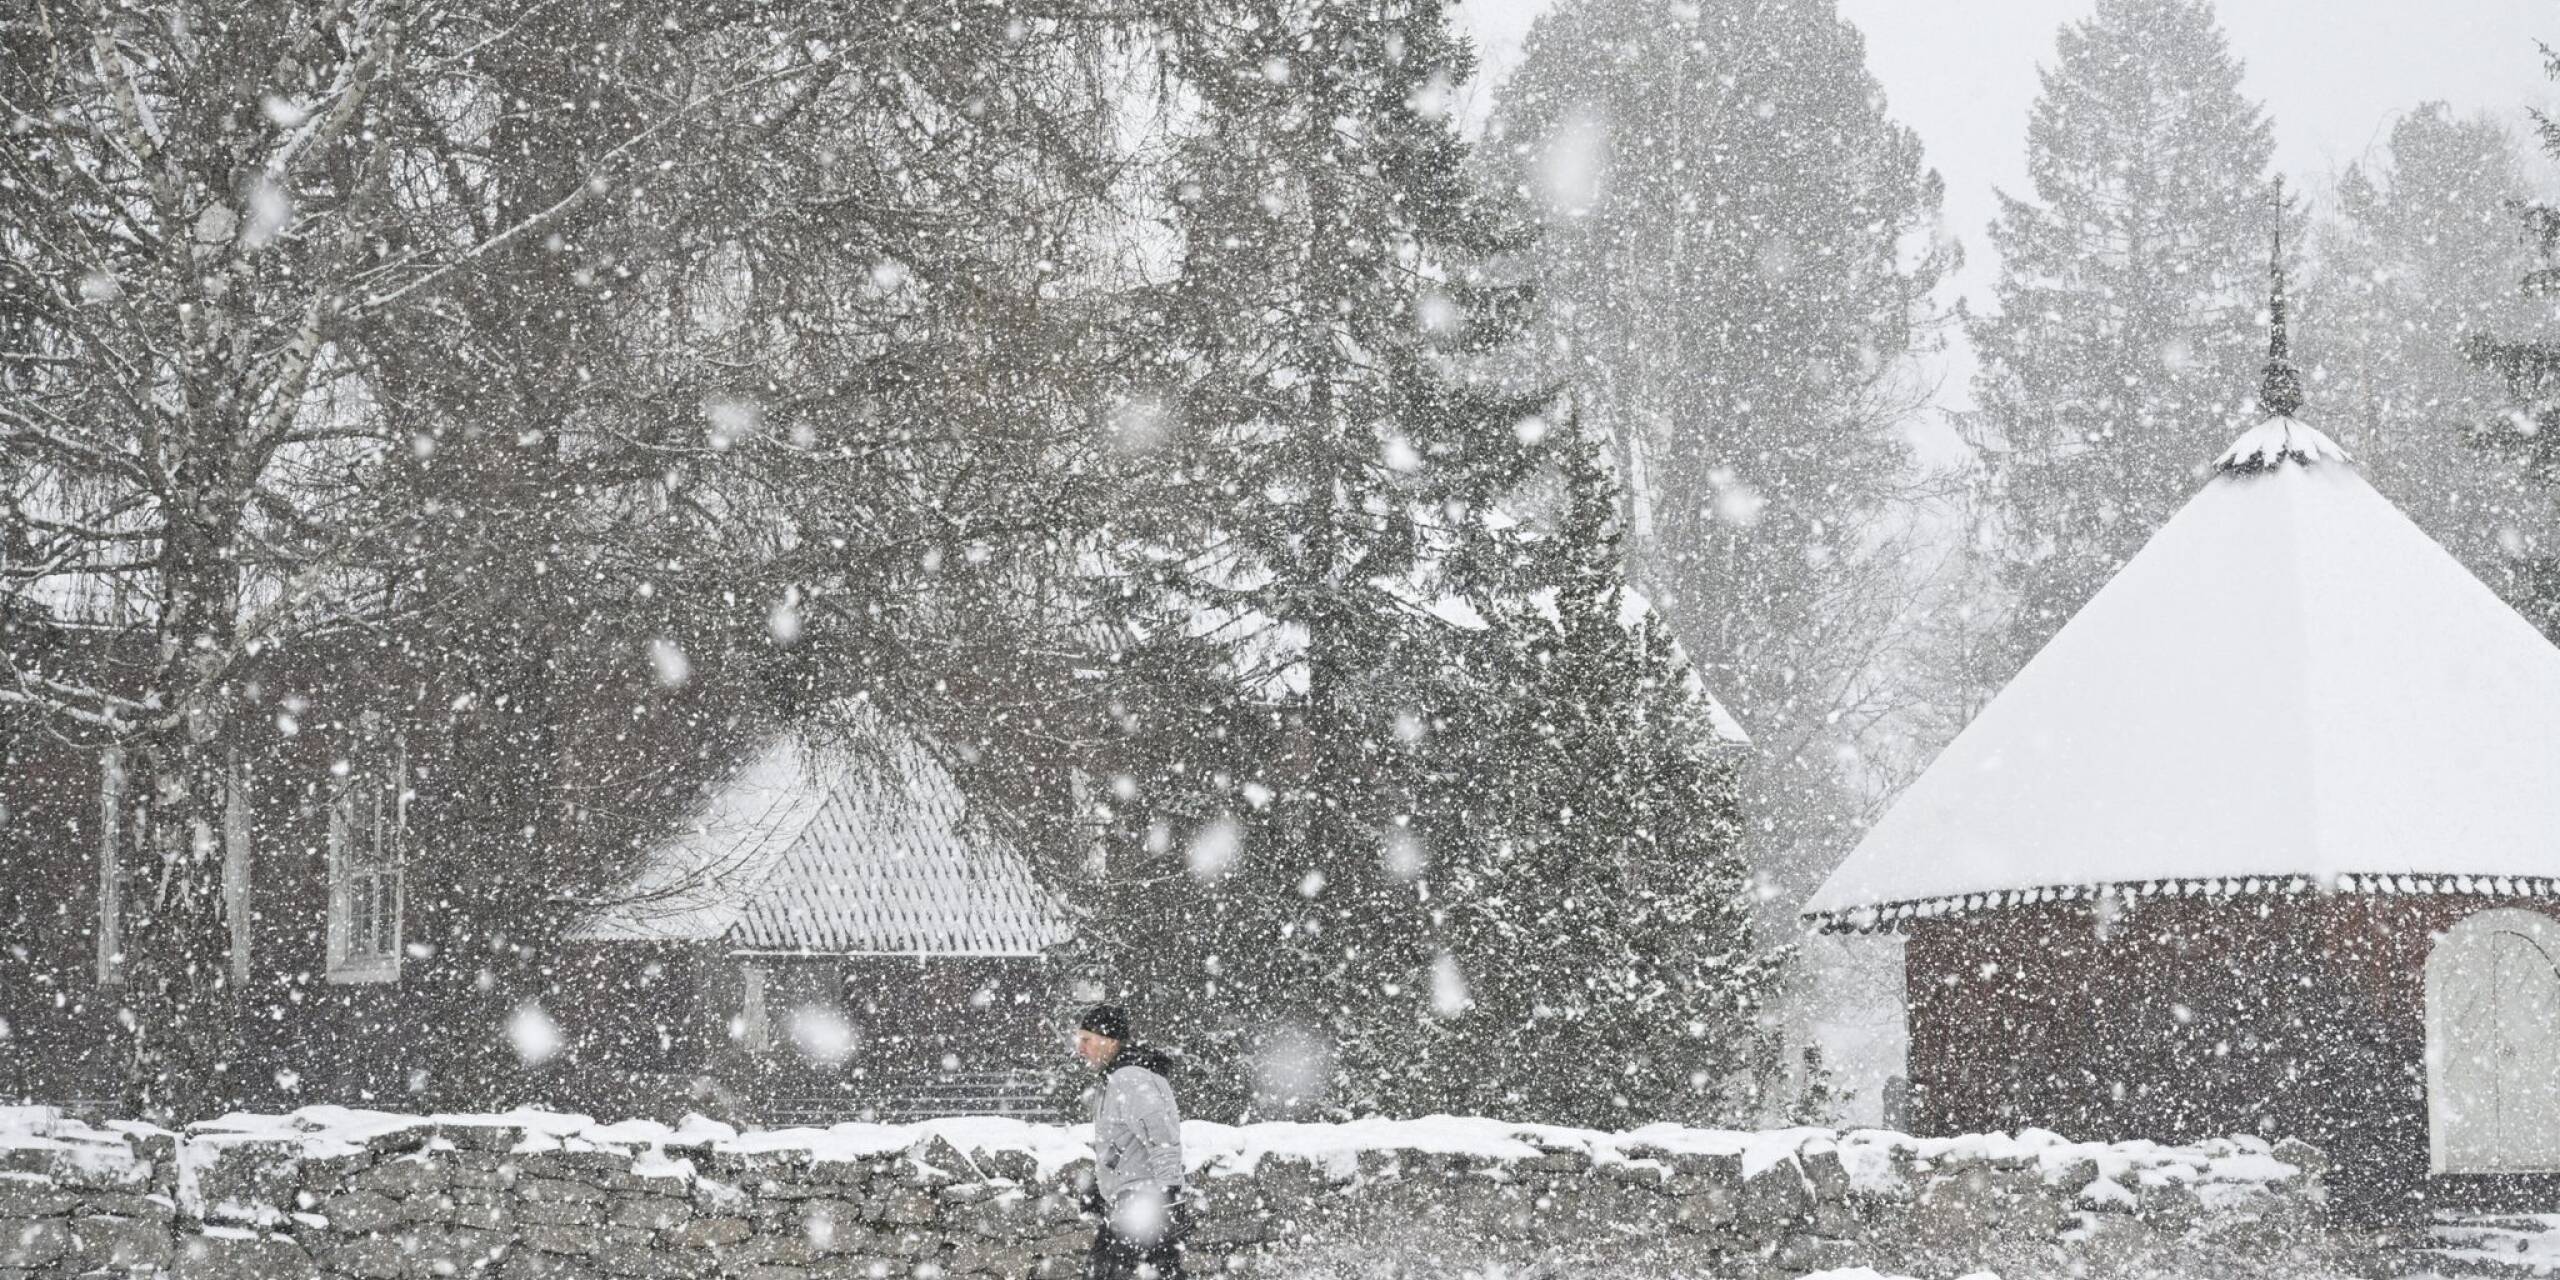 In Bayern schneit es - und in Finnland auch. In dem Städtchen Keuruu herrscht tiefster Winter.